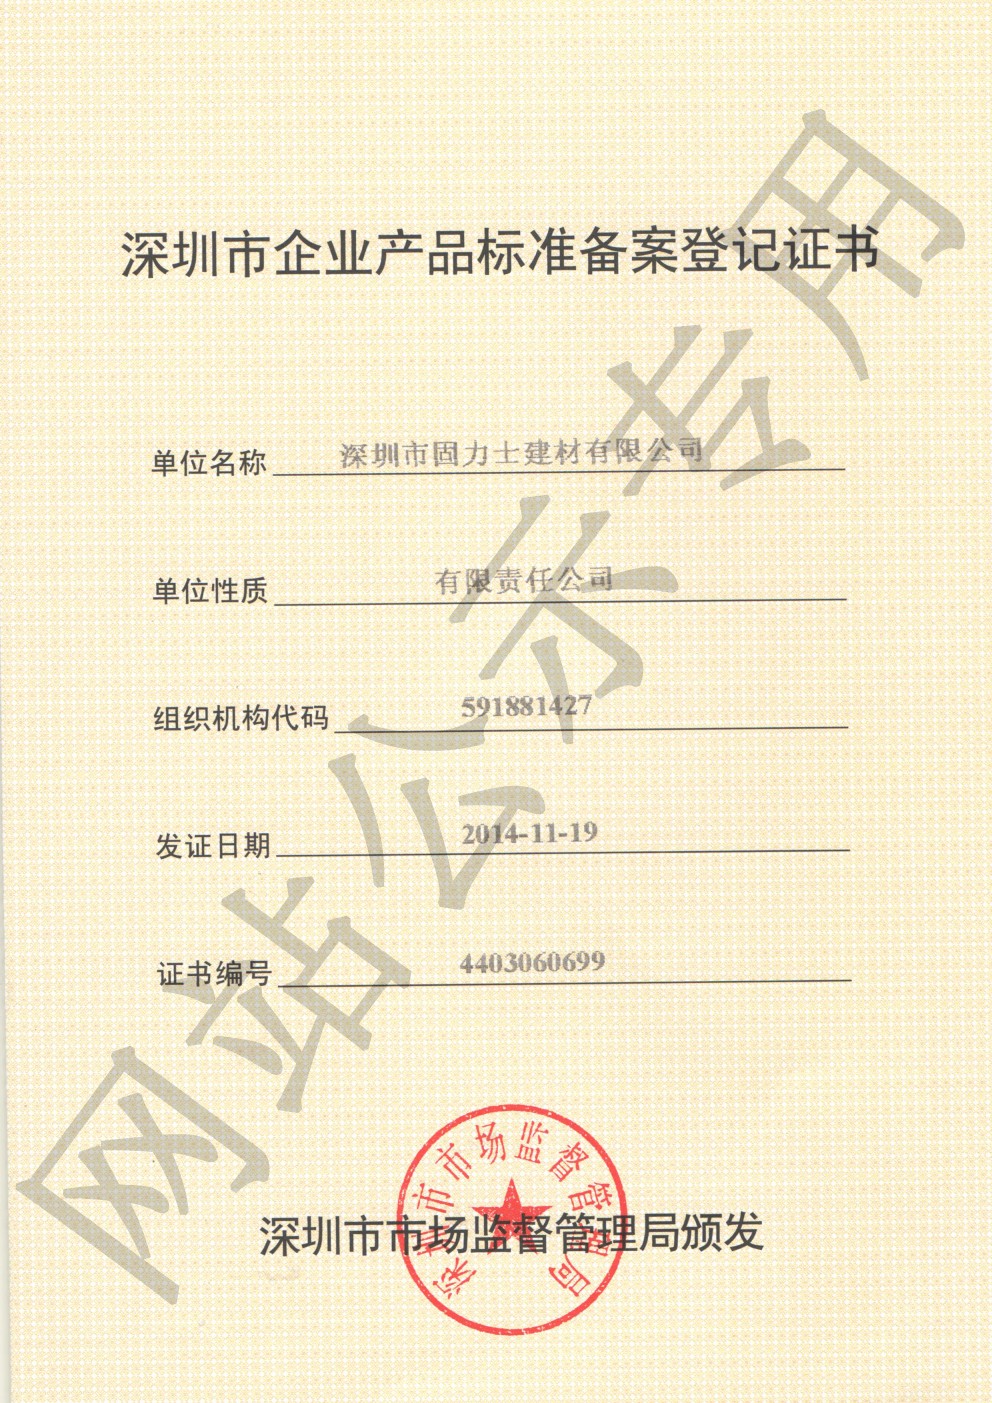 蓬溪企业产品标准登记证书